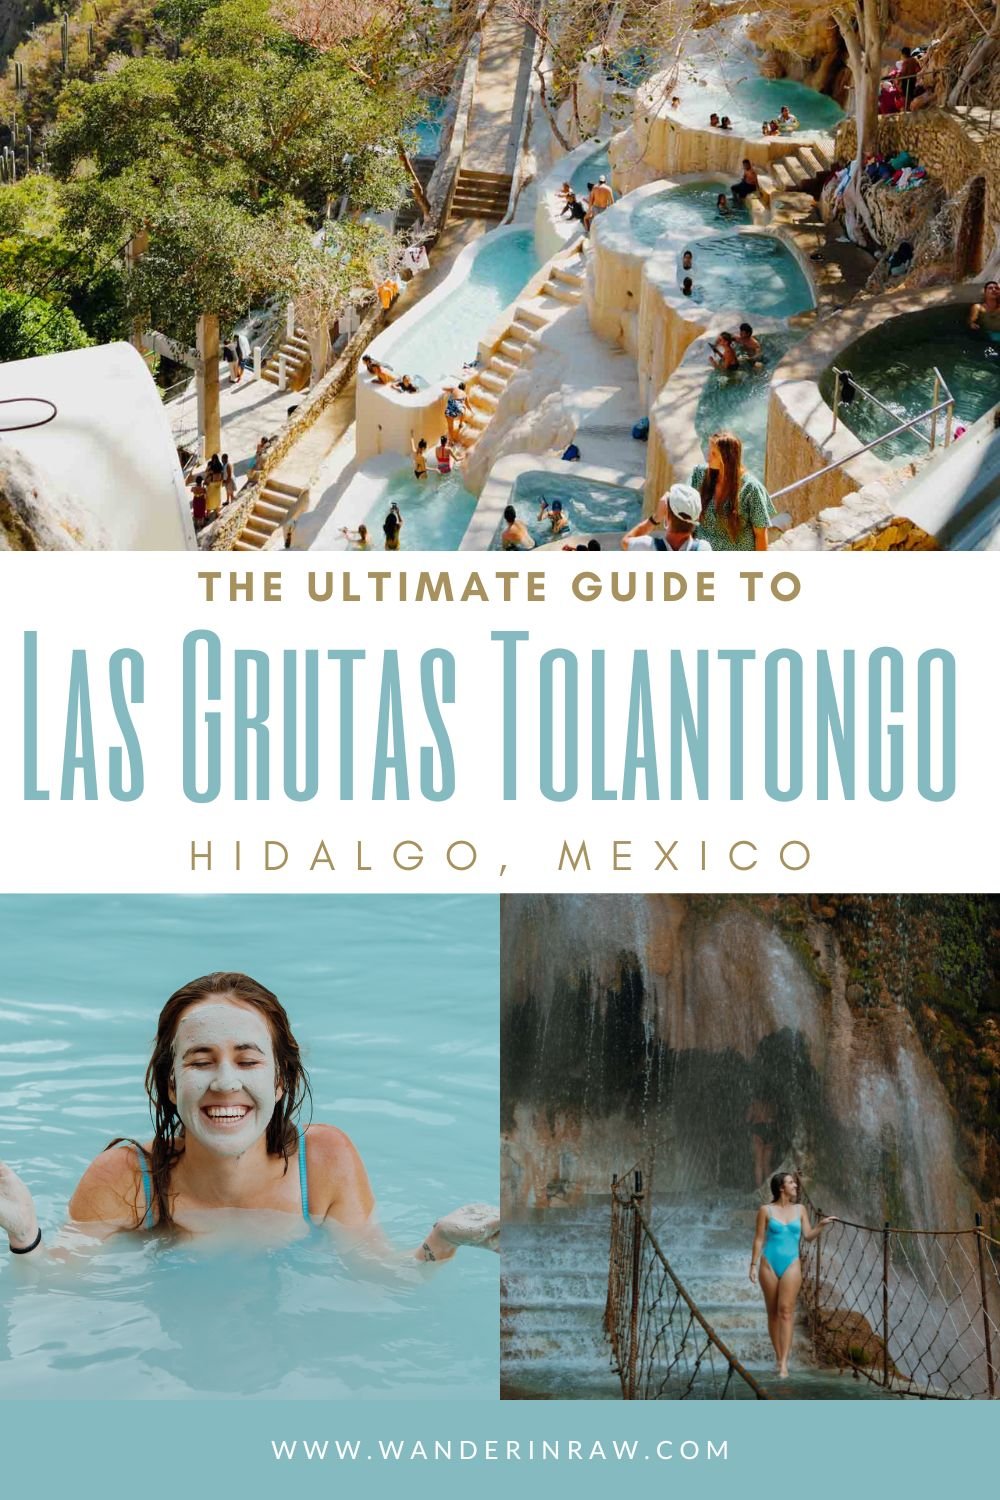 The Adventurer's Guide to Las Grutas Tolantongo, Hidalgo, Mexico